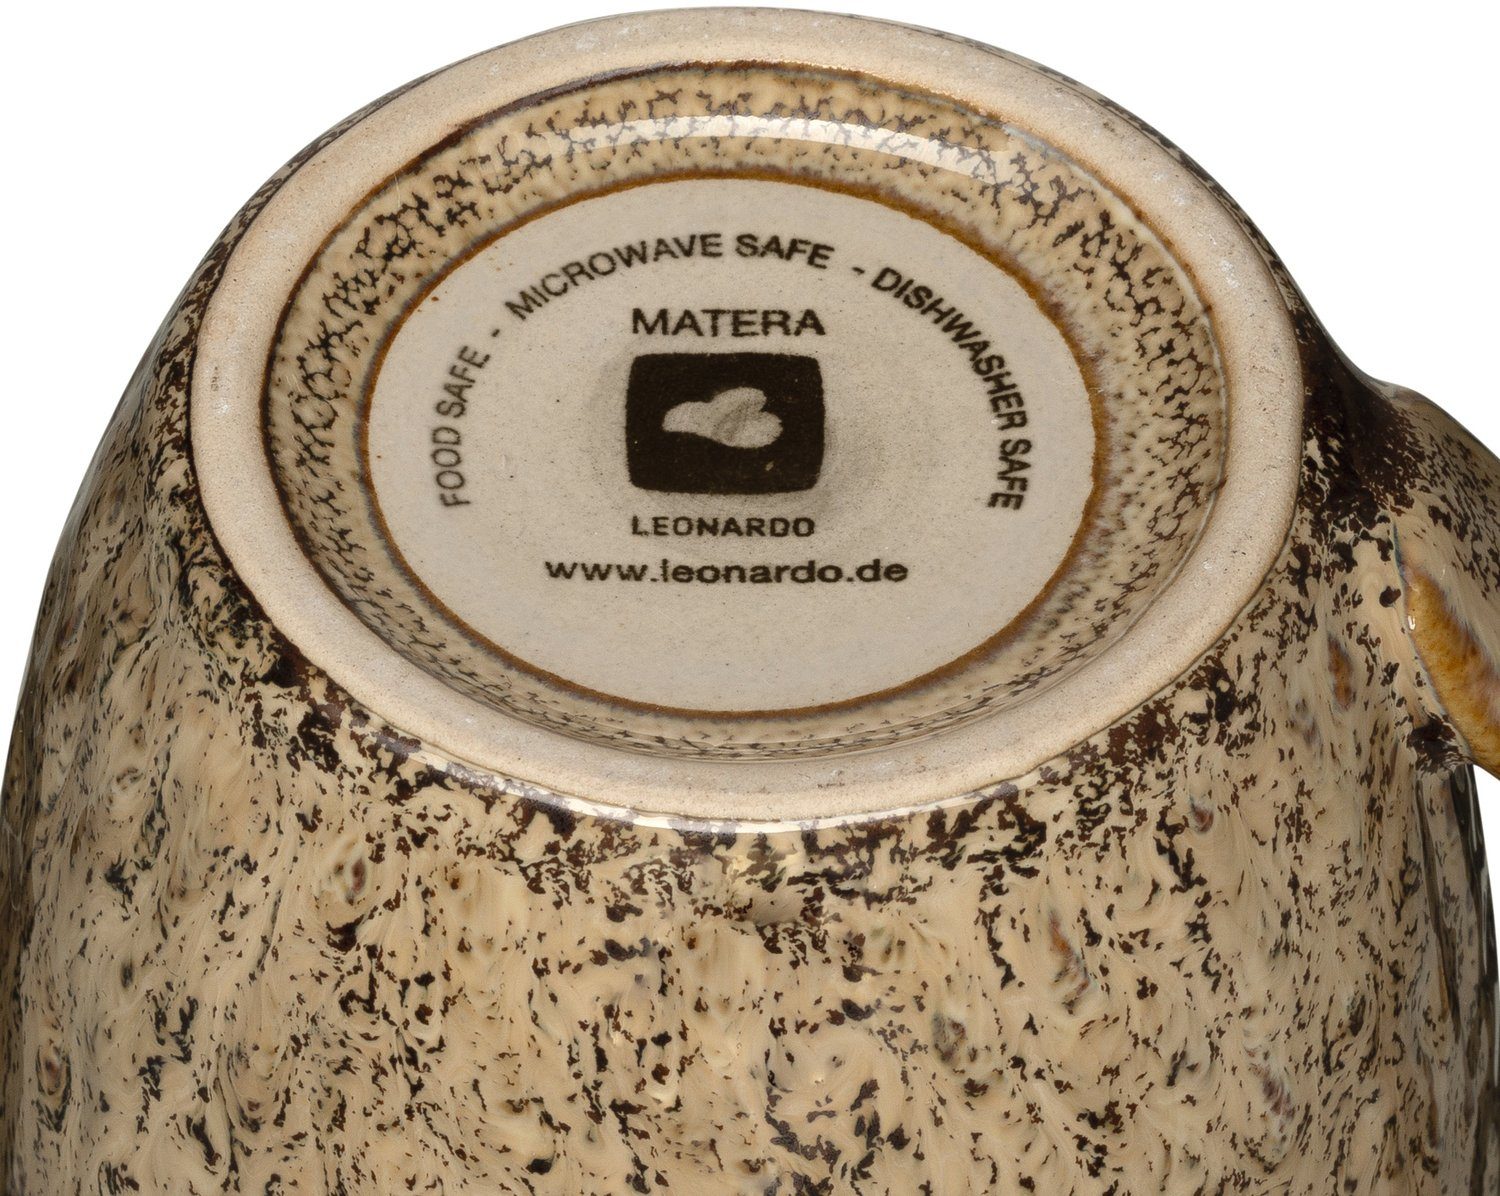 Matera, LEONARDO sand 430 Becher Keramik, 6-teilig ml,